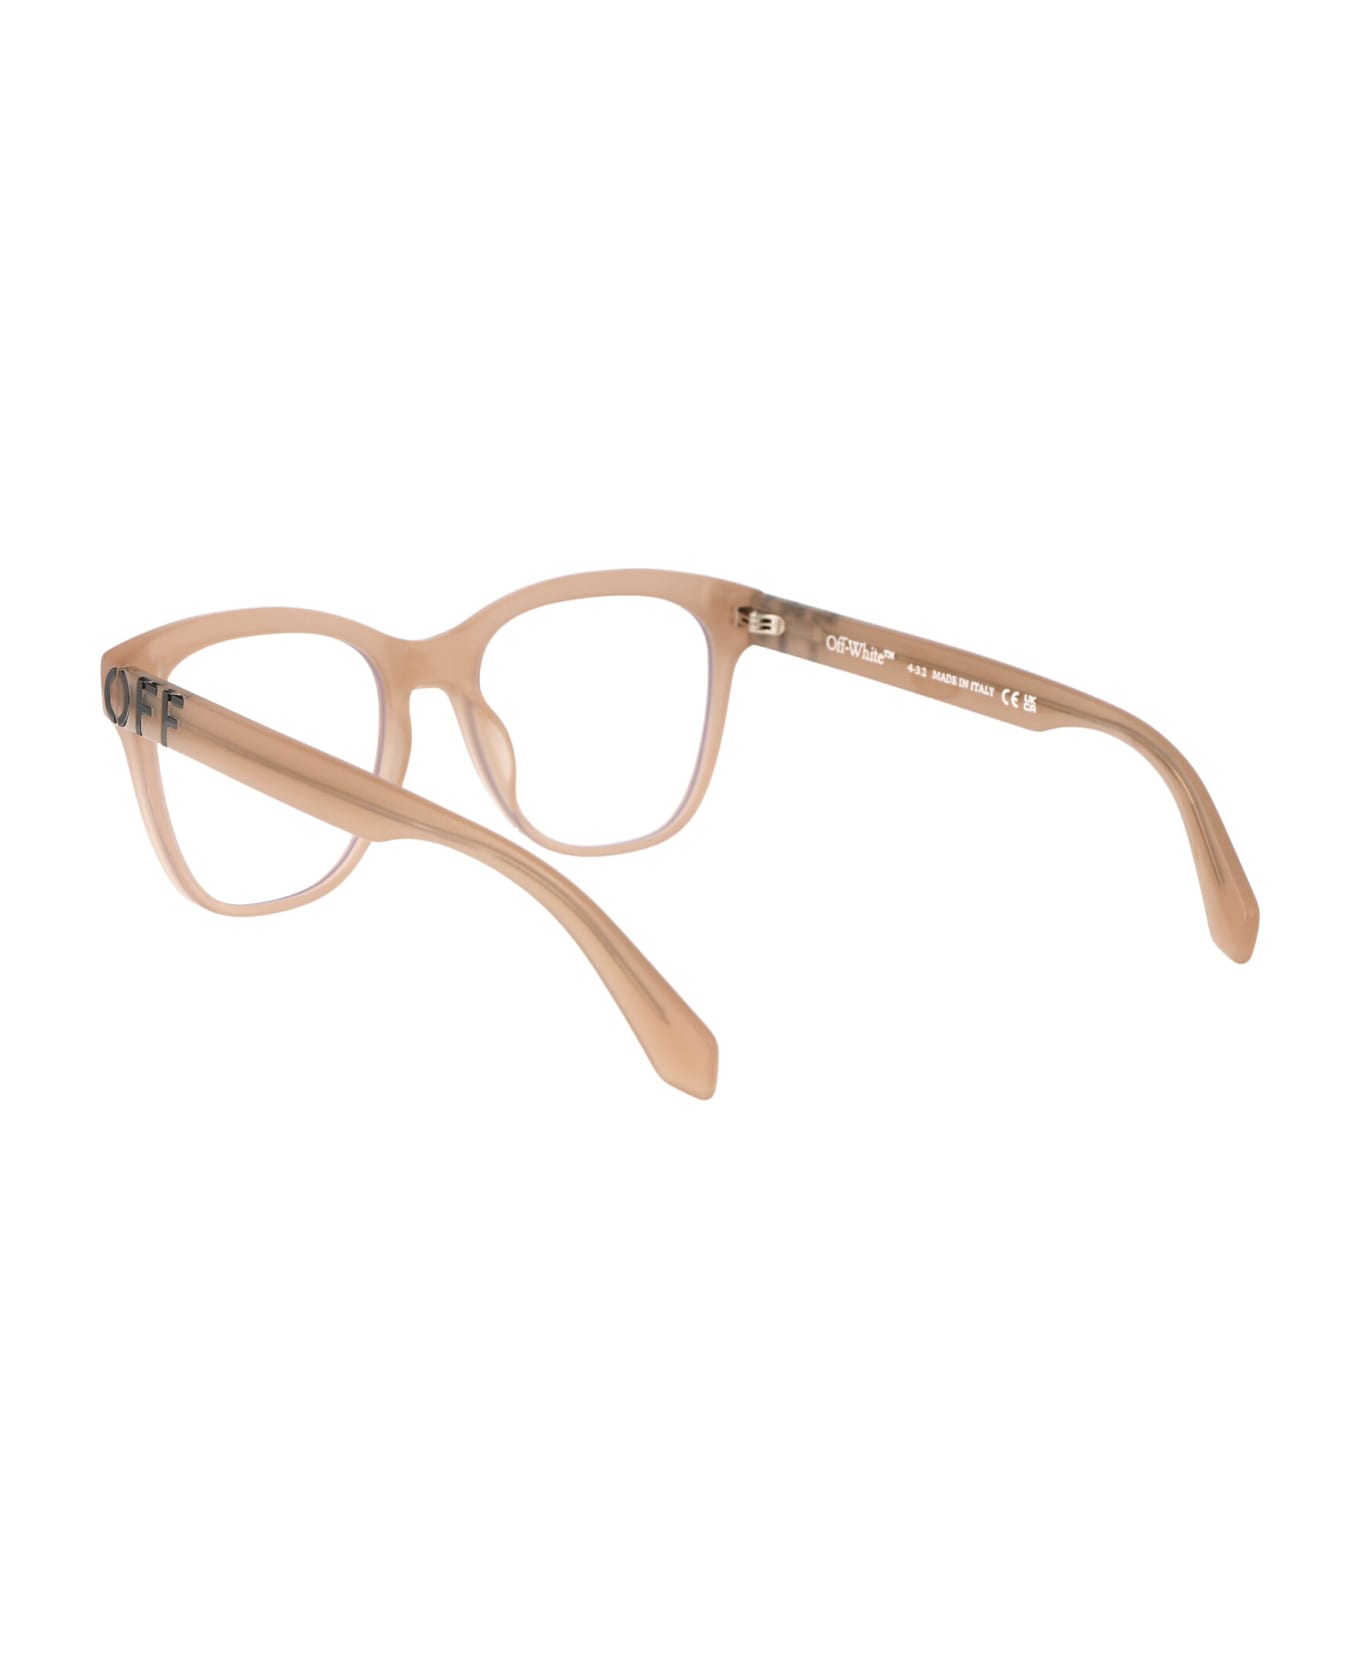 Off-White Optical Style 69 Glasses - 6100 BEIGE  アイウェア